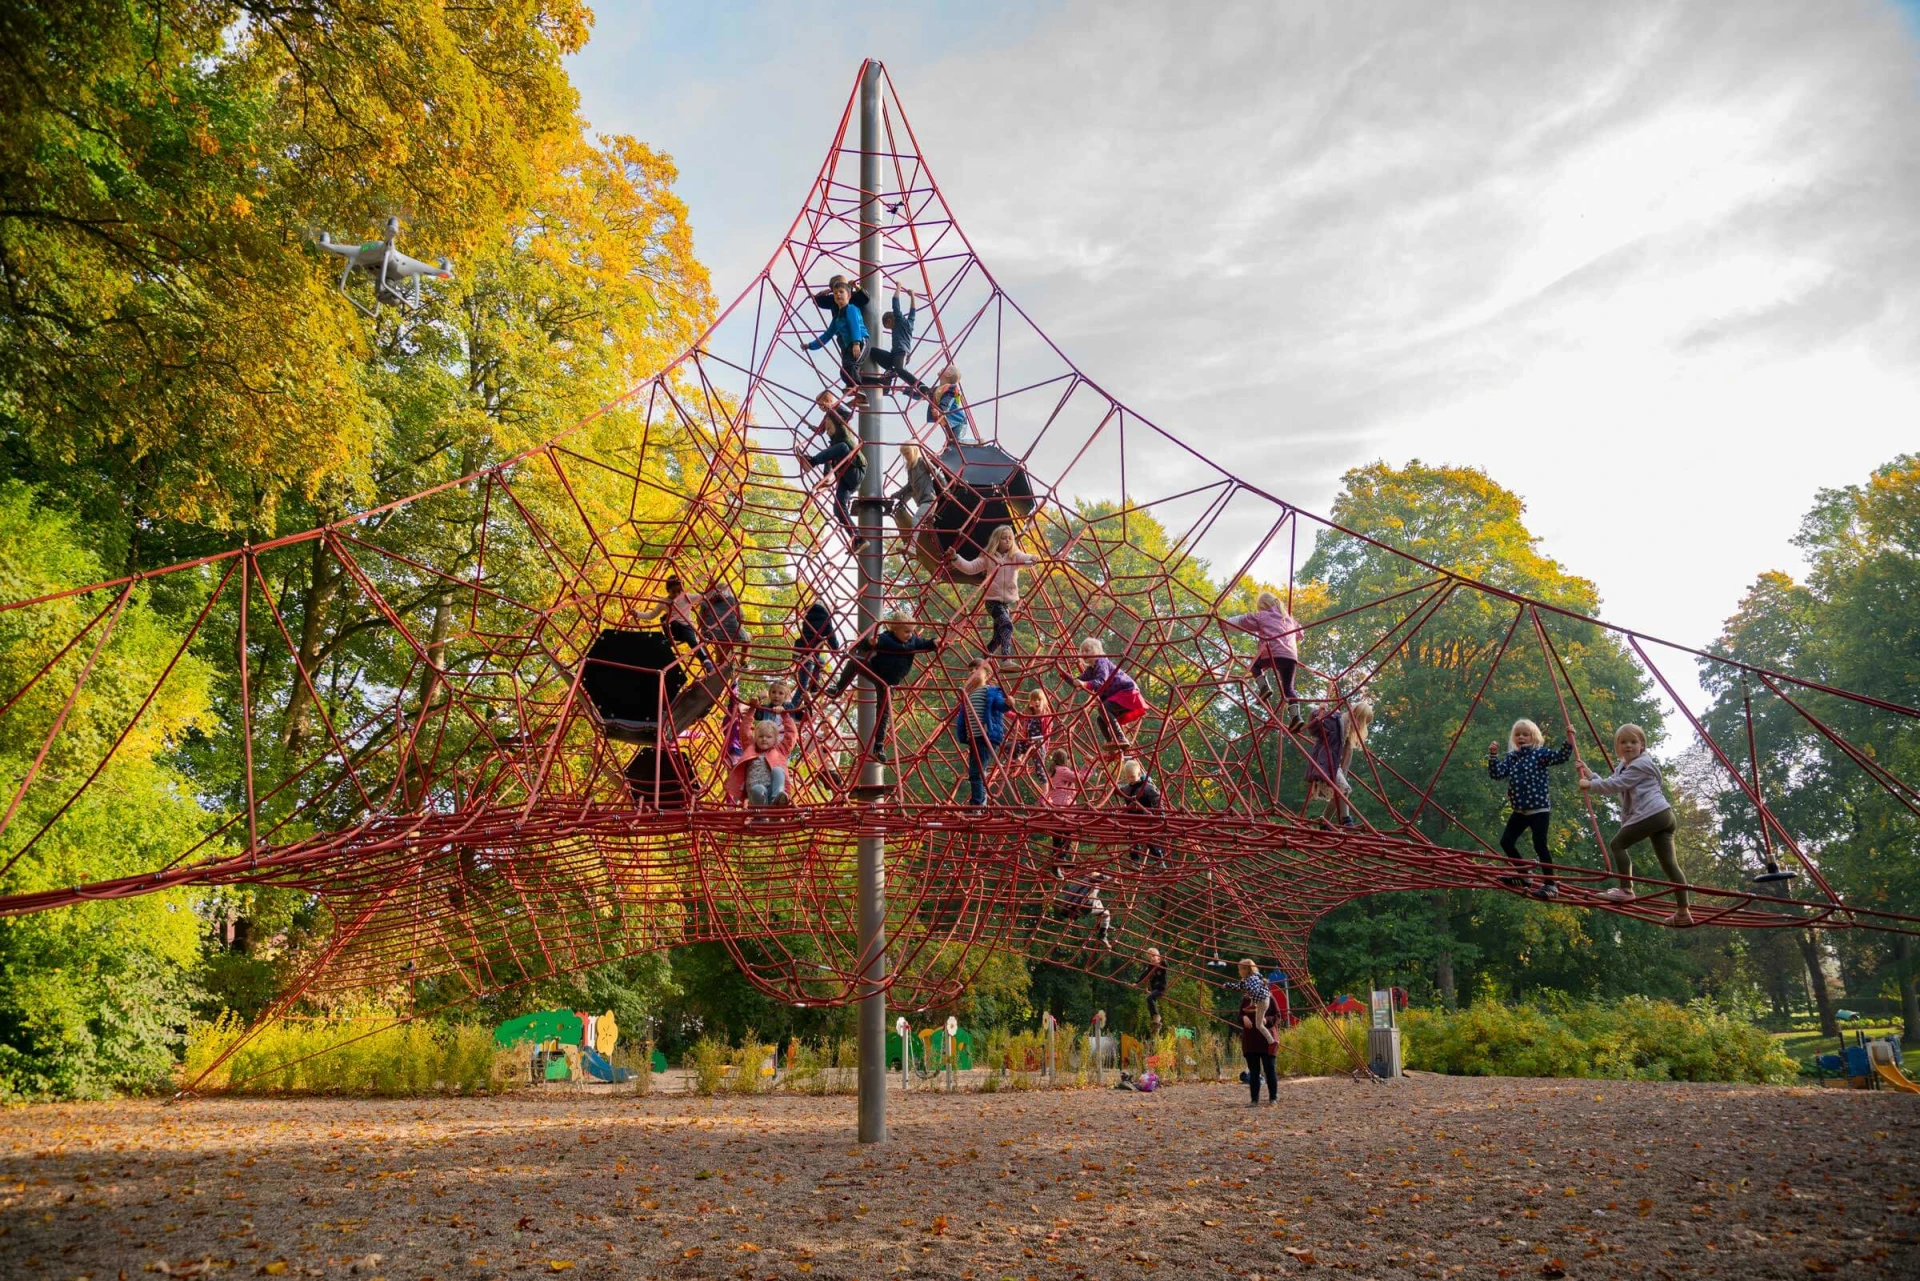 Kinder klettern auf dem grossen Spielplatz Raumnetz im Schloss Egeskov